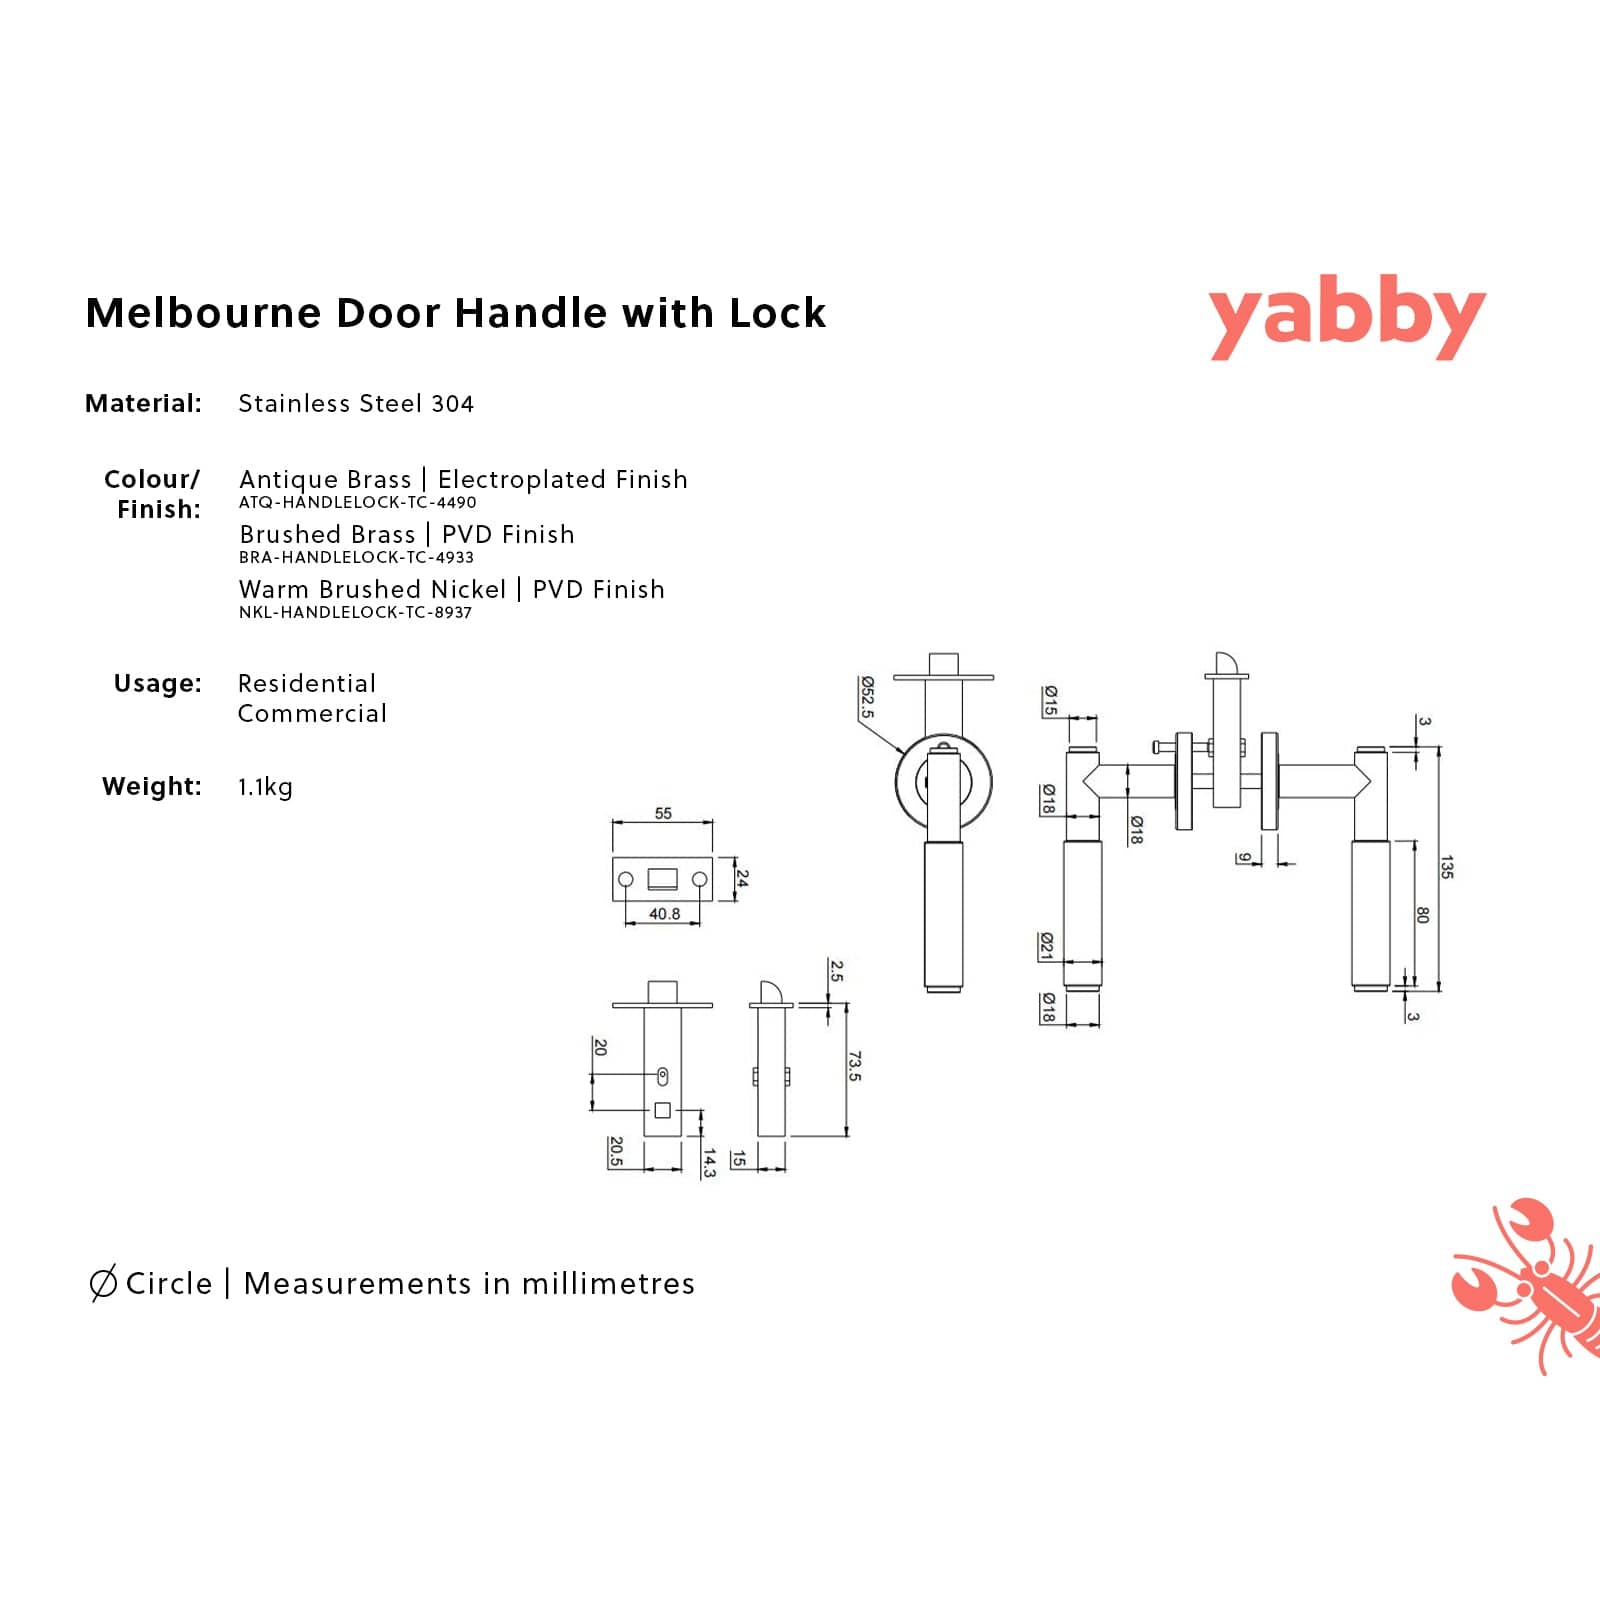 TileCloud TAPWARE Melbourne Door Handle with Lock Warm Brushed Nickel